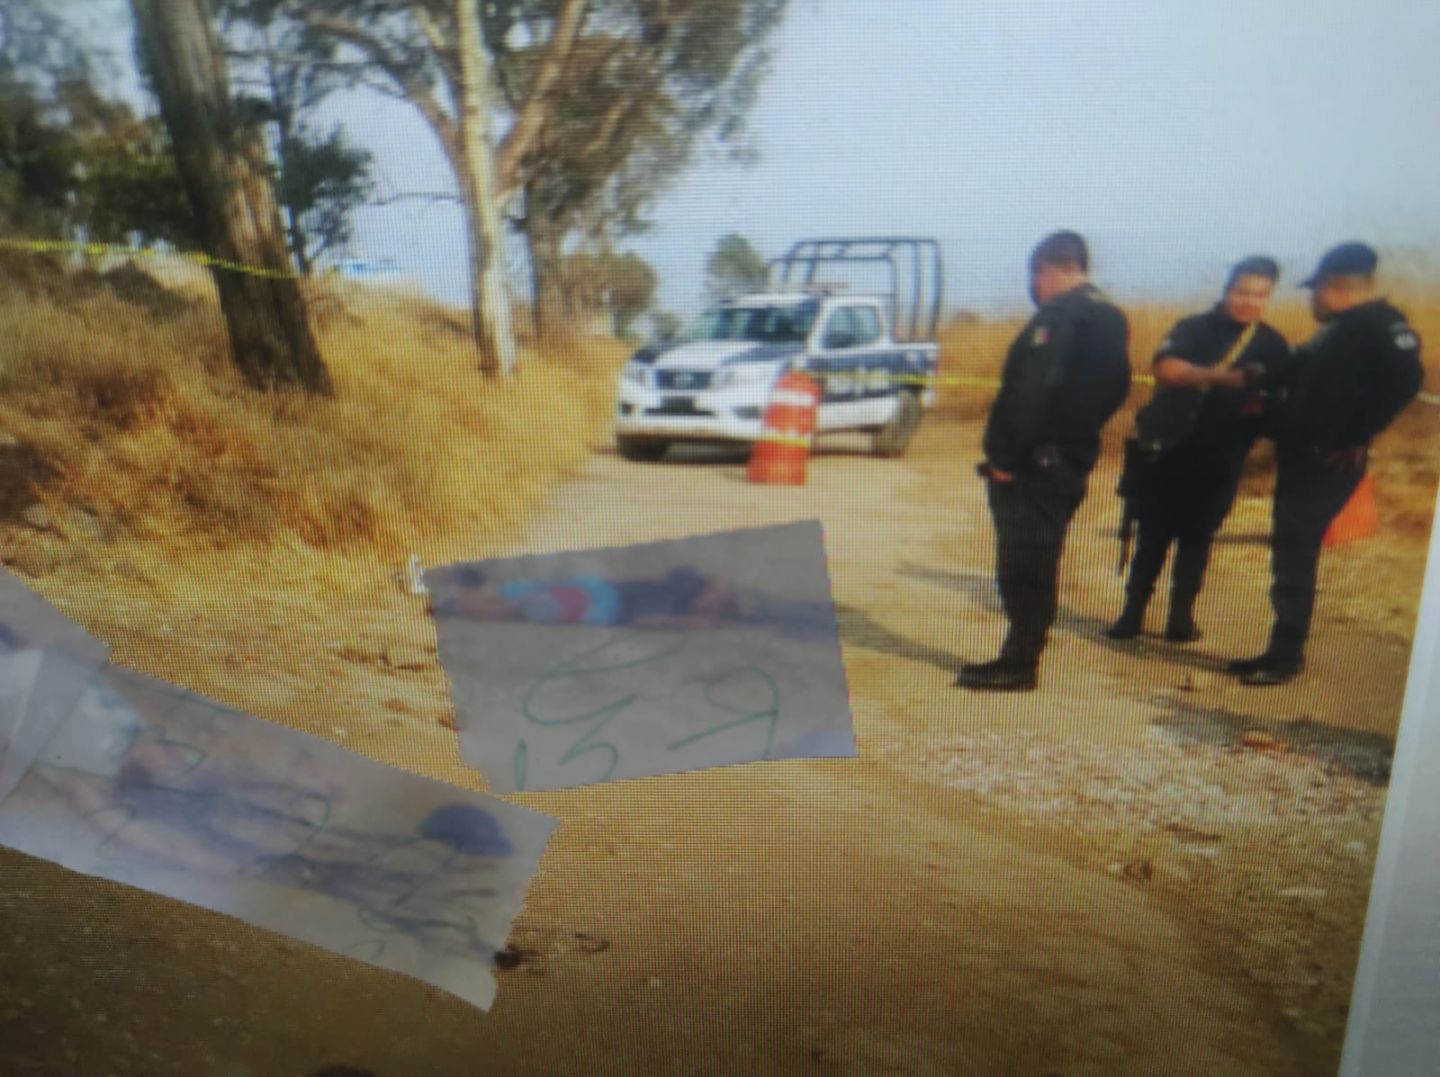 #Ejecutaron a dos en Tlalmanalco, grave inseguridad en la región de los volcanes